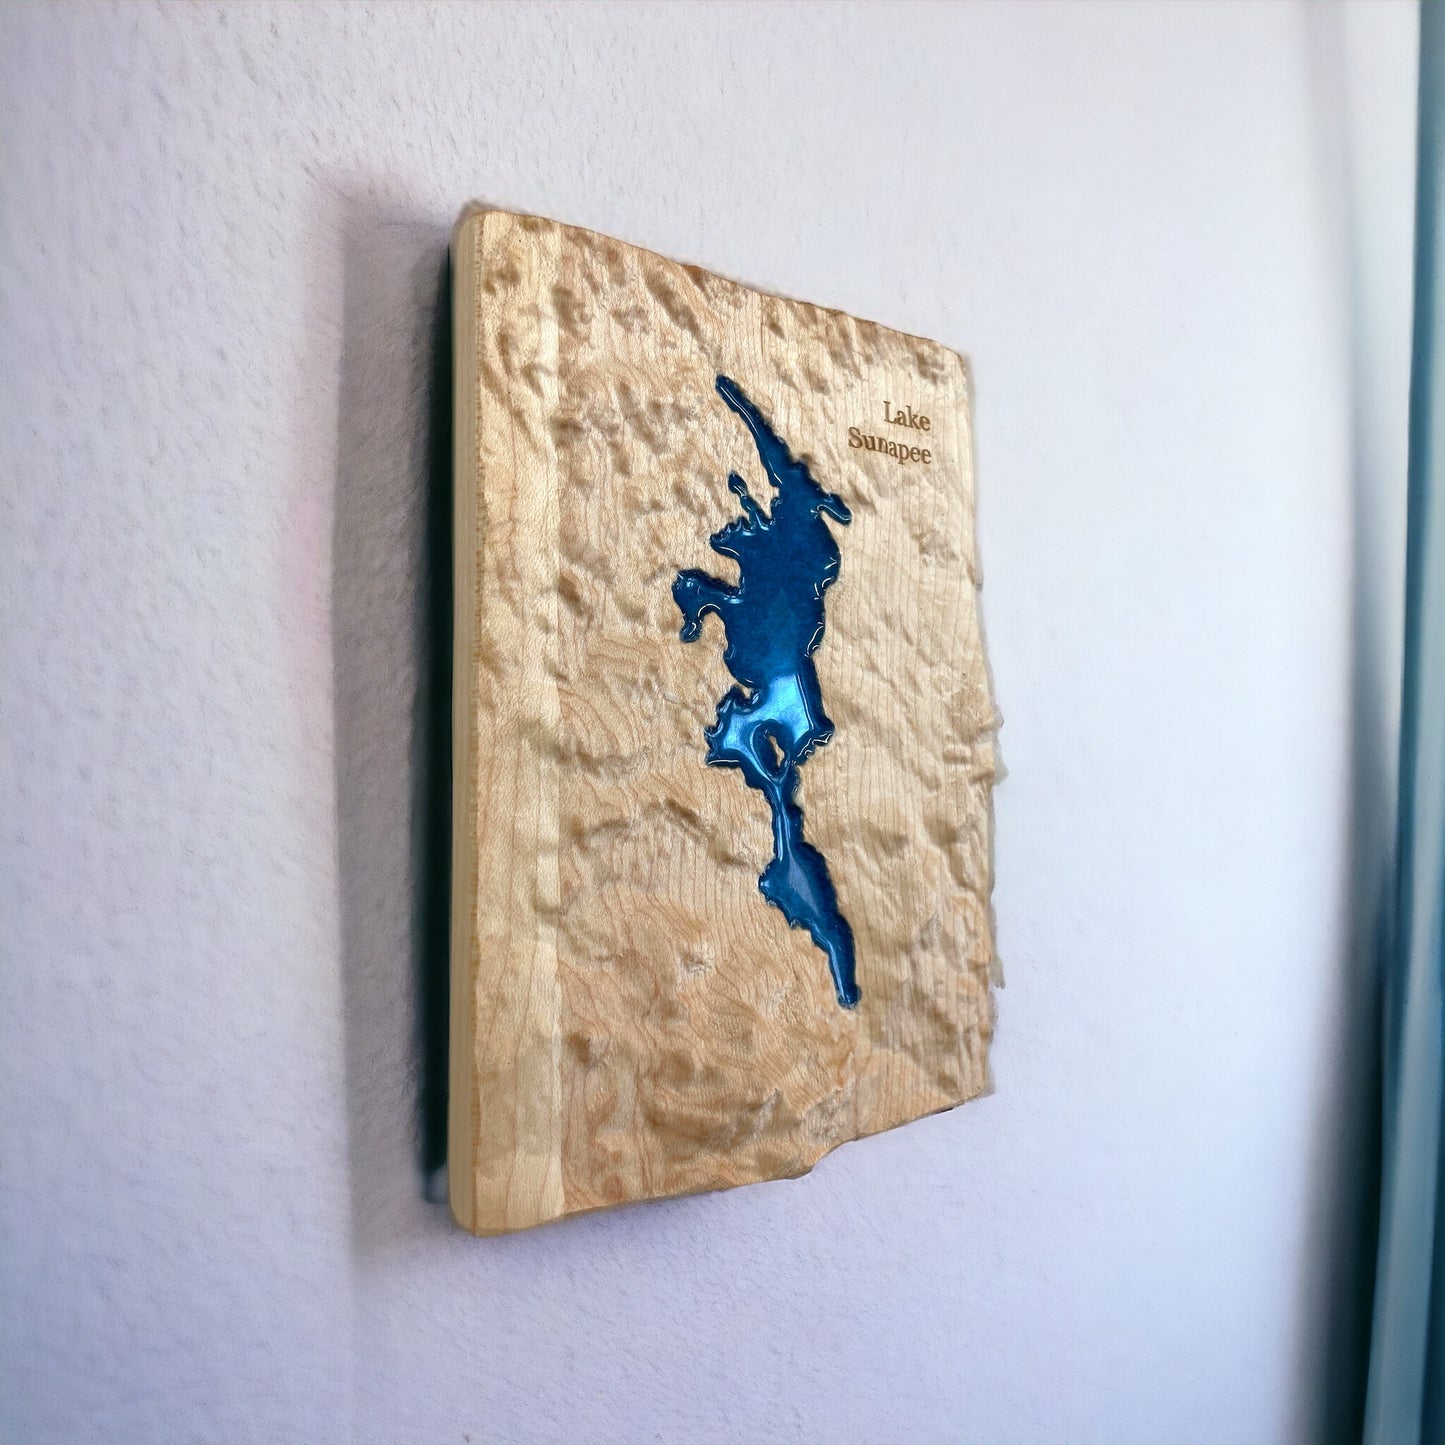 Lake Sunapee 3D Relief Map | Lake Sunapee Wood Epoxy Art | Lake Sunapee New Hampshire | Gift for Him | Travel Gift | Lake Sunapee NH Gift